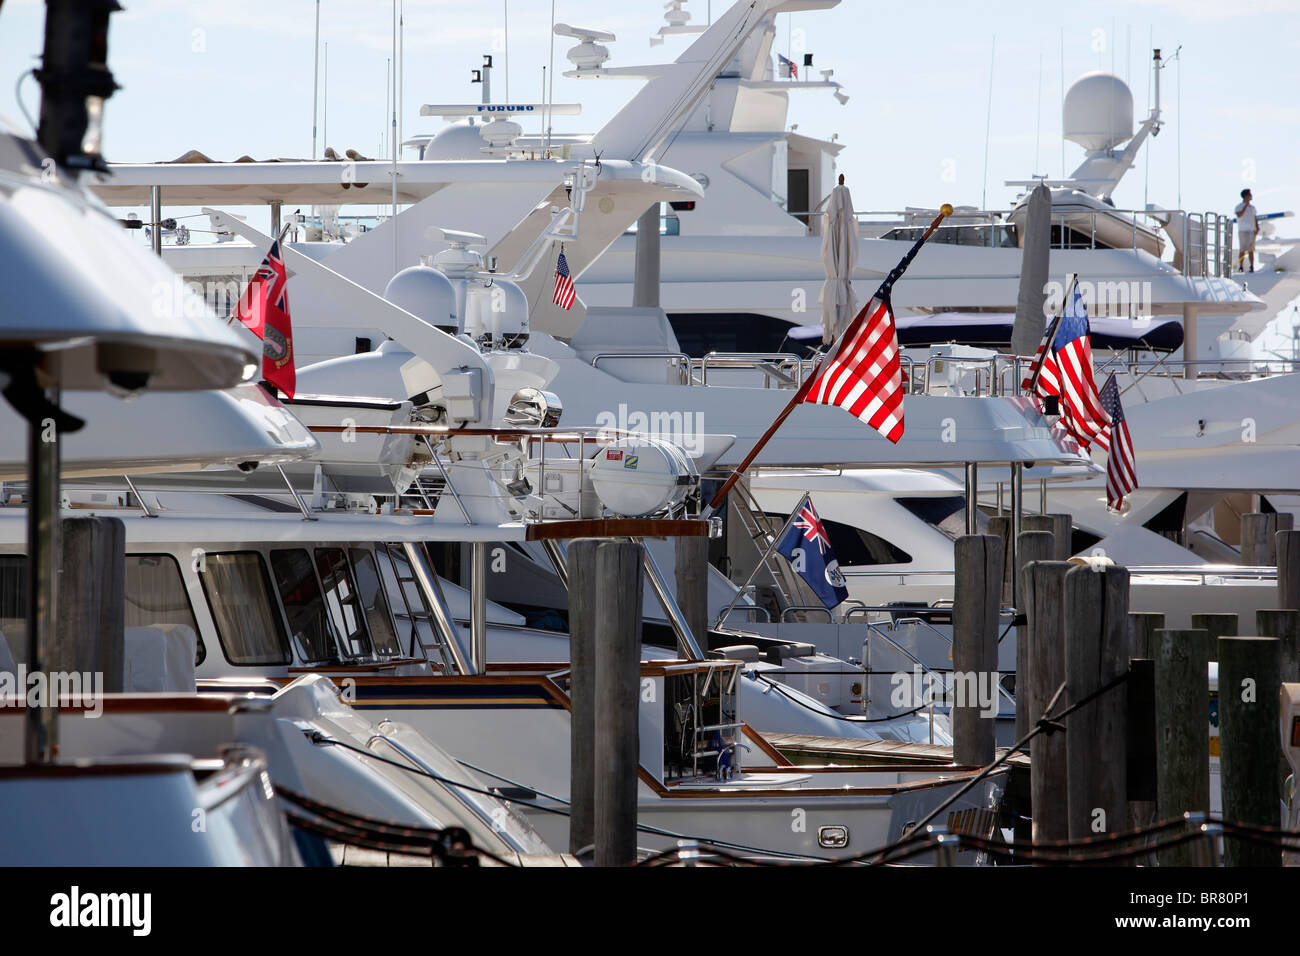 Yachts in the marina at Sag Harbor, New York Stock Photo